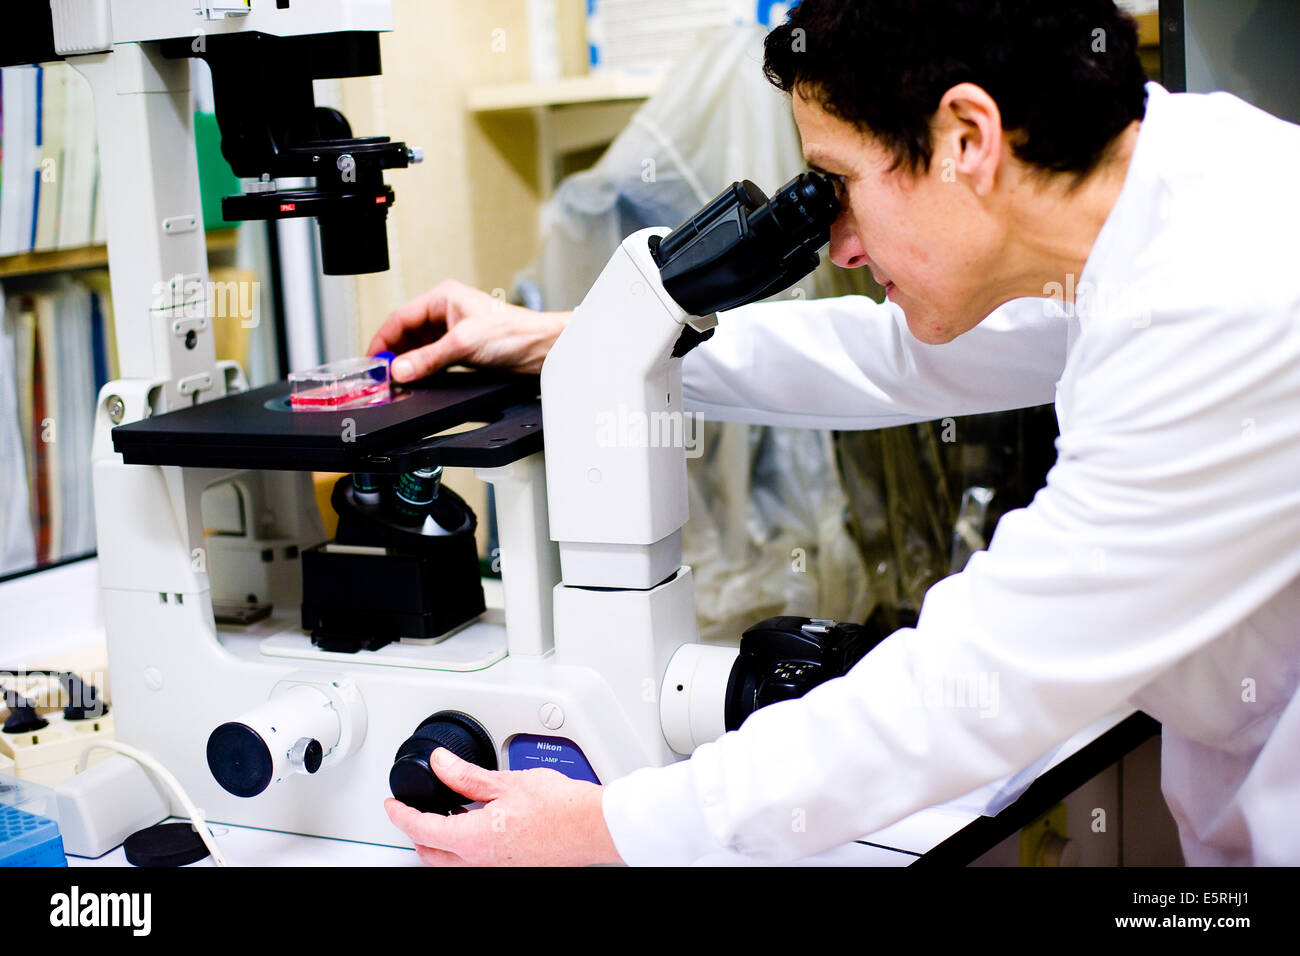 Kulturen von Krebszellen verwendet für die Erforschung neuer Medikamente, menschliche Molekulare Onkologie Labor von Oscar Lambret Krebsforschung Stockfoto